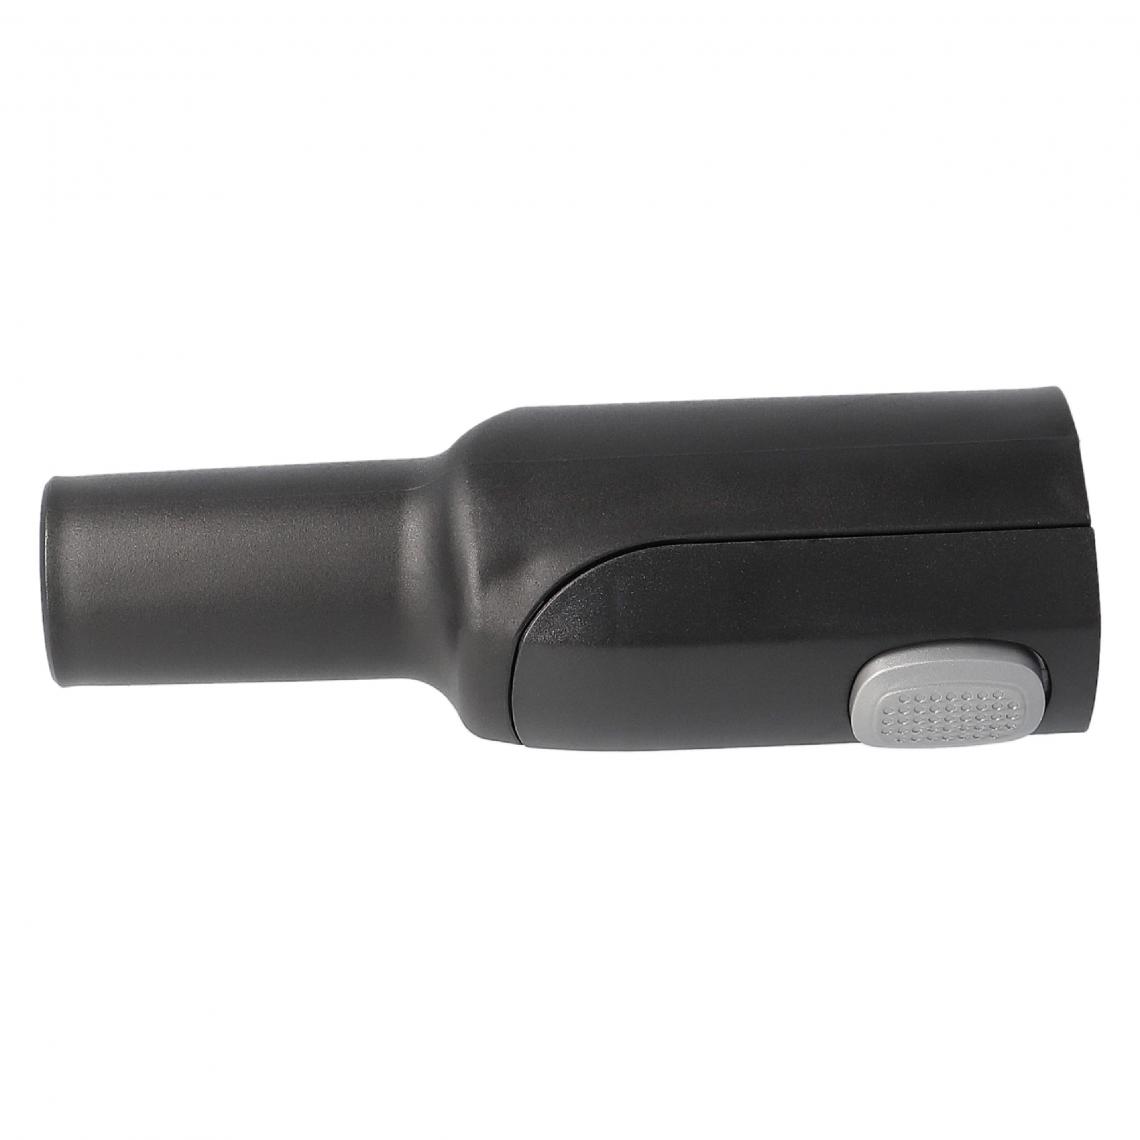 Vhbw - vhbw Adaptateur pour aspirateur Max-In 36mm à raccord 32mm compatible avec AEG/Electrolux Ultra Silencer ZUSG3900 - noir, plastique - Accessoire entretien des sols